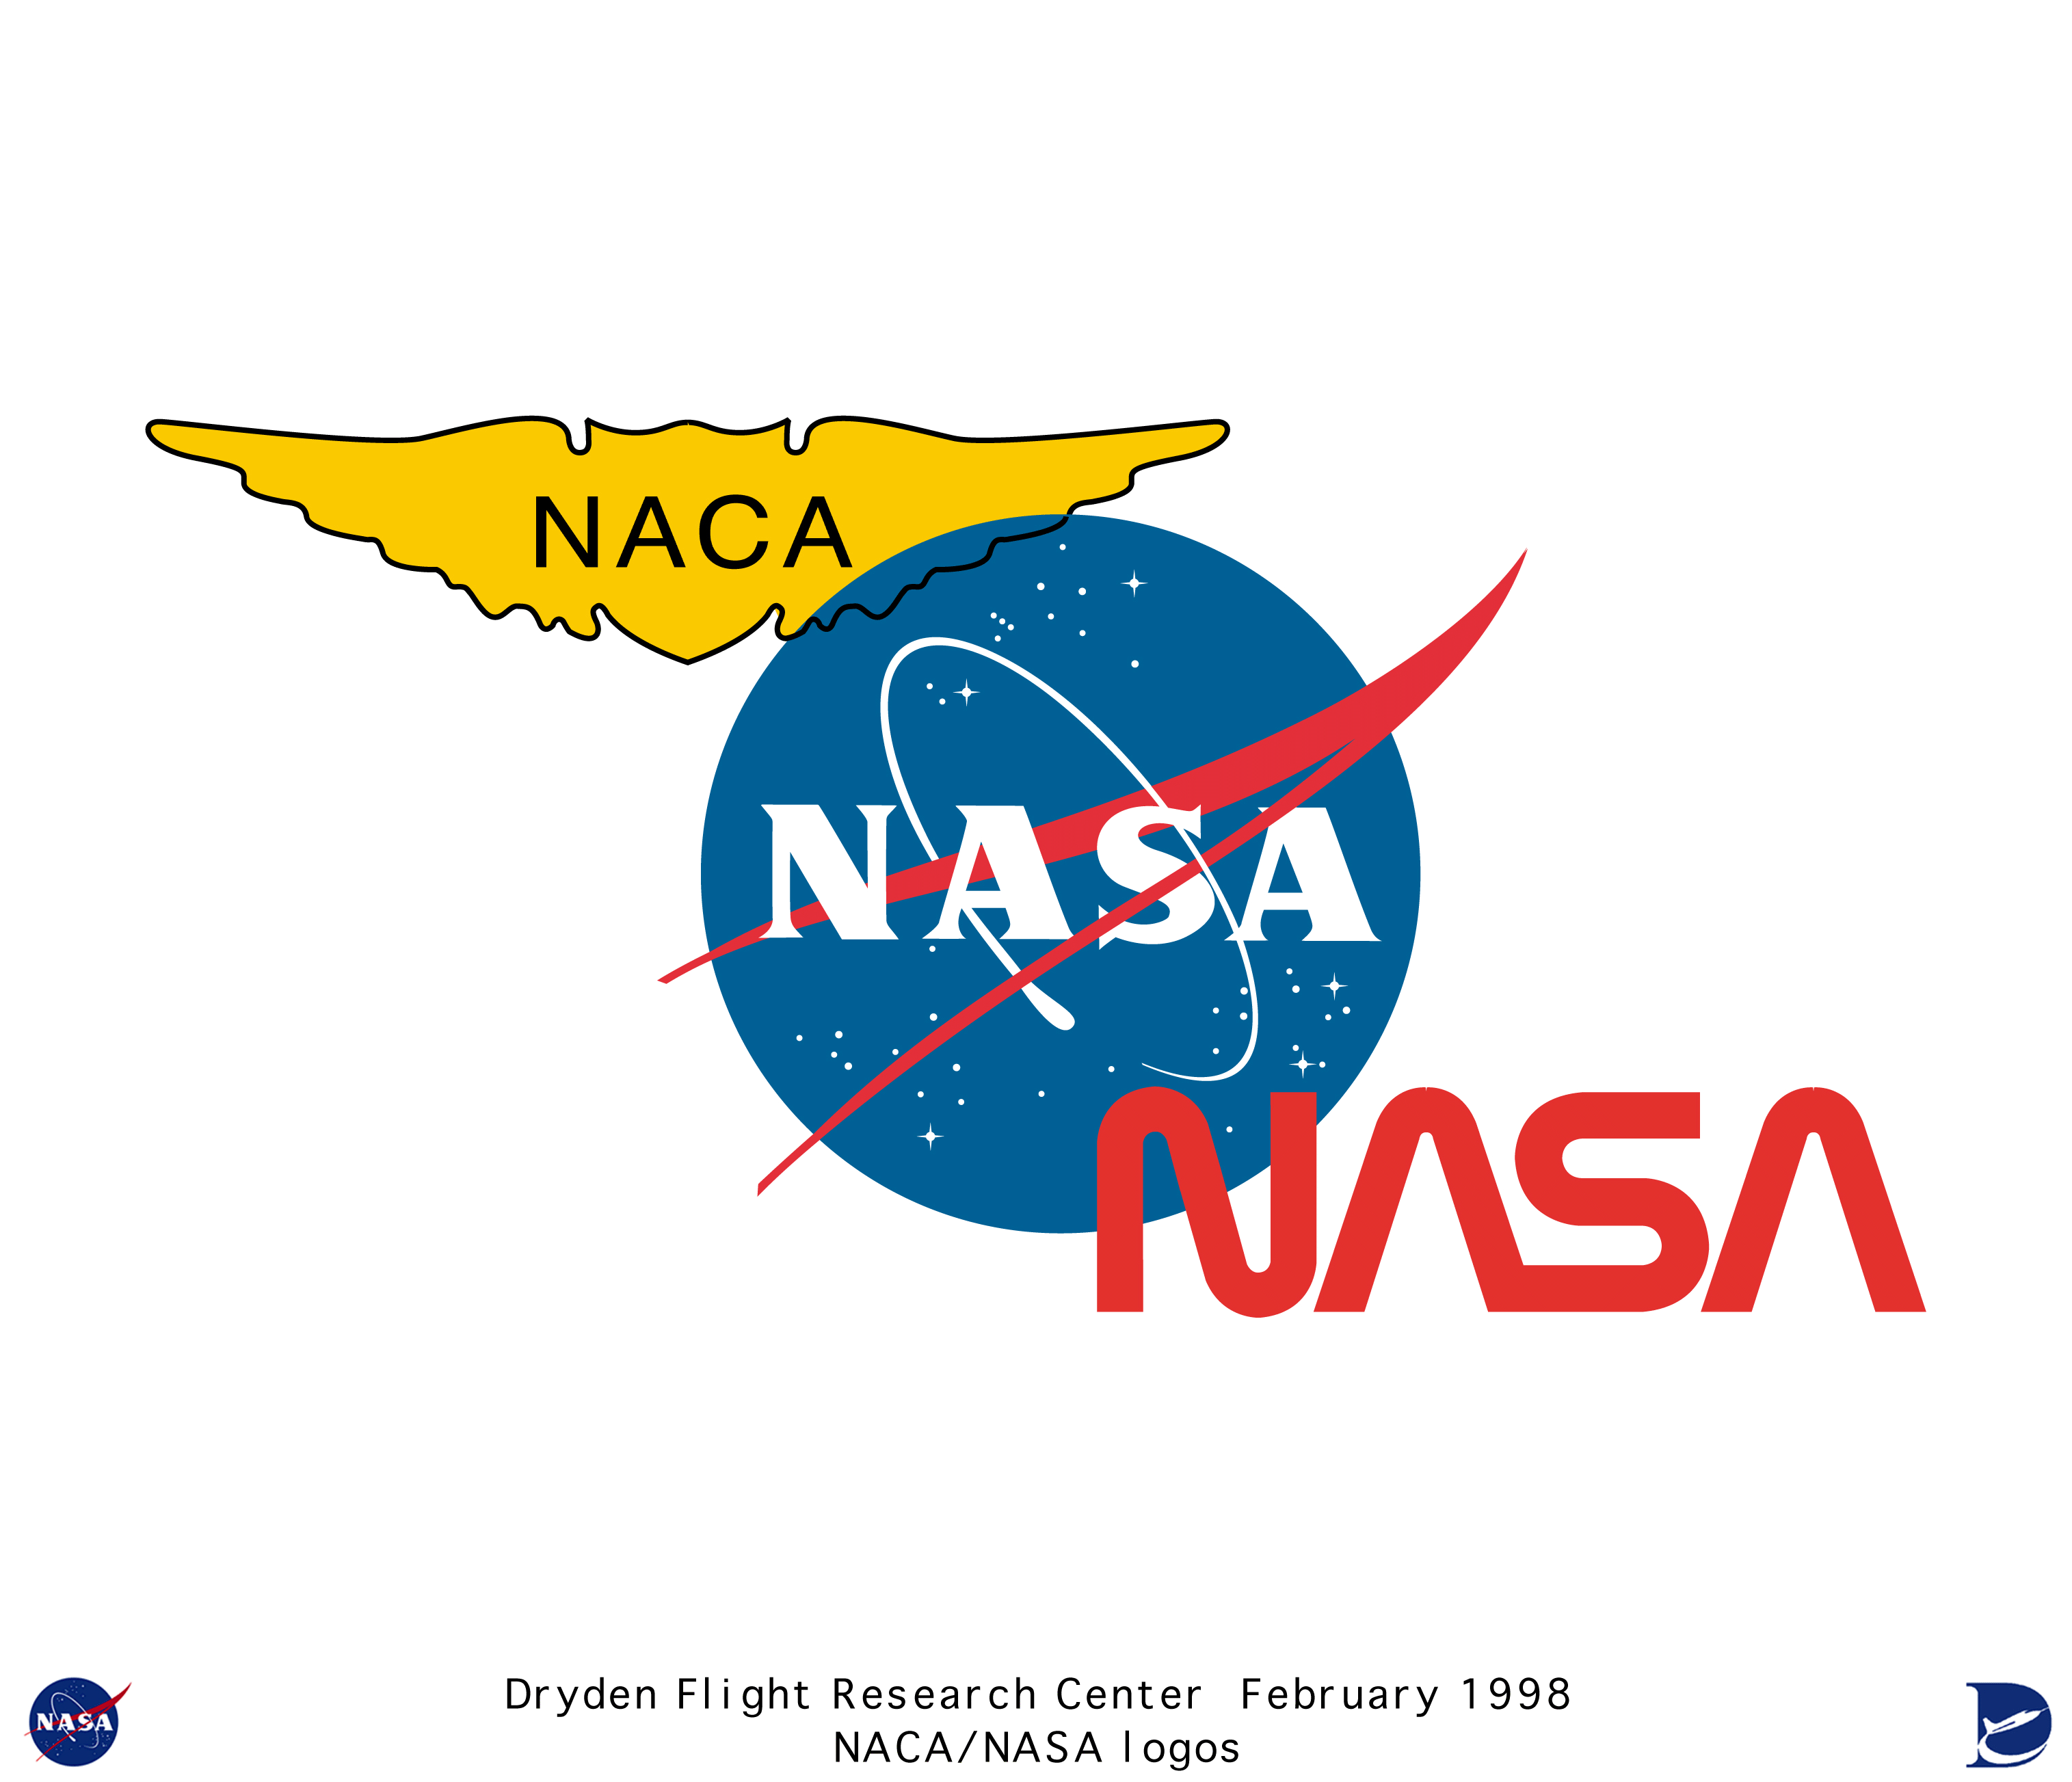 NASA Insignia Logo - Logos color_tri-logo: Color tri-logo (NACA, 2 NASA insignia)